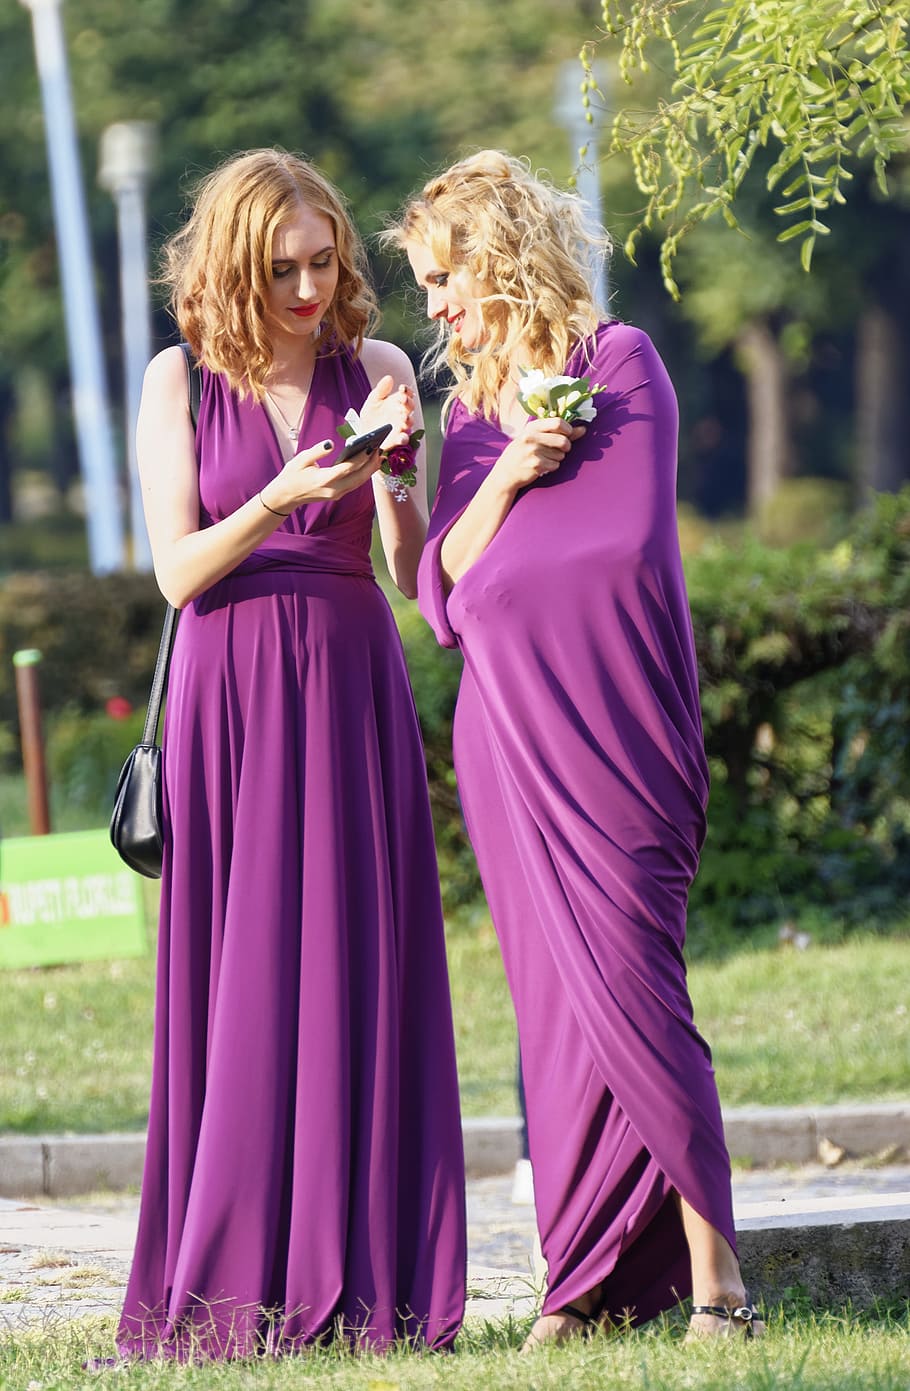 Two Women Wearing Purple Dresses on Grass Field, adult, beautiful